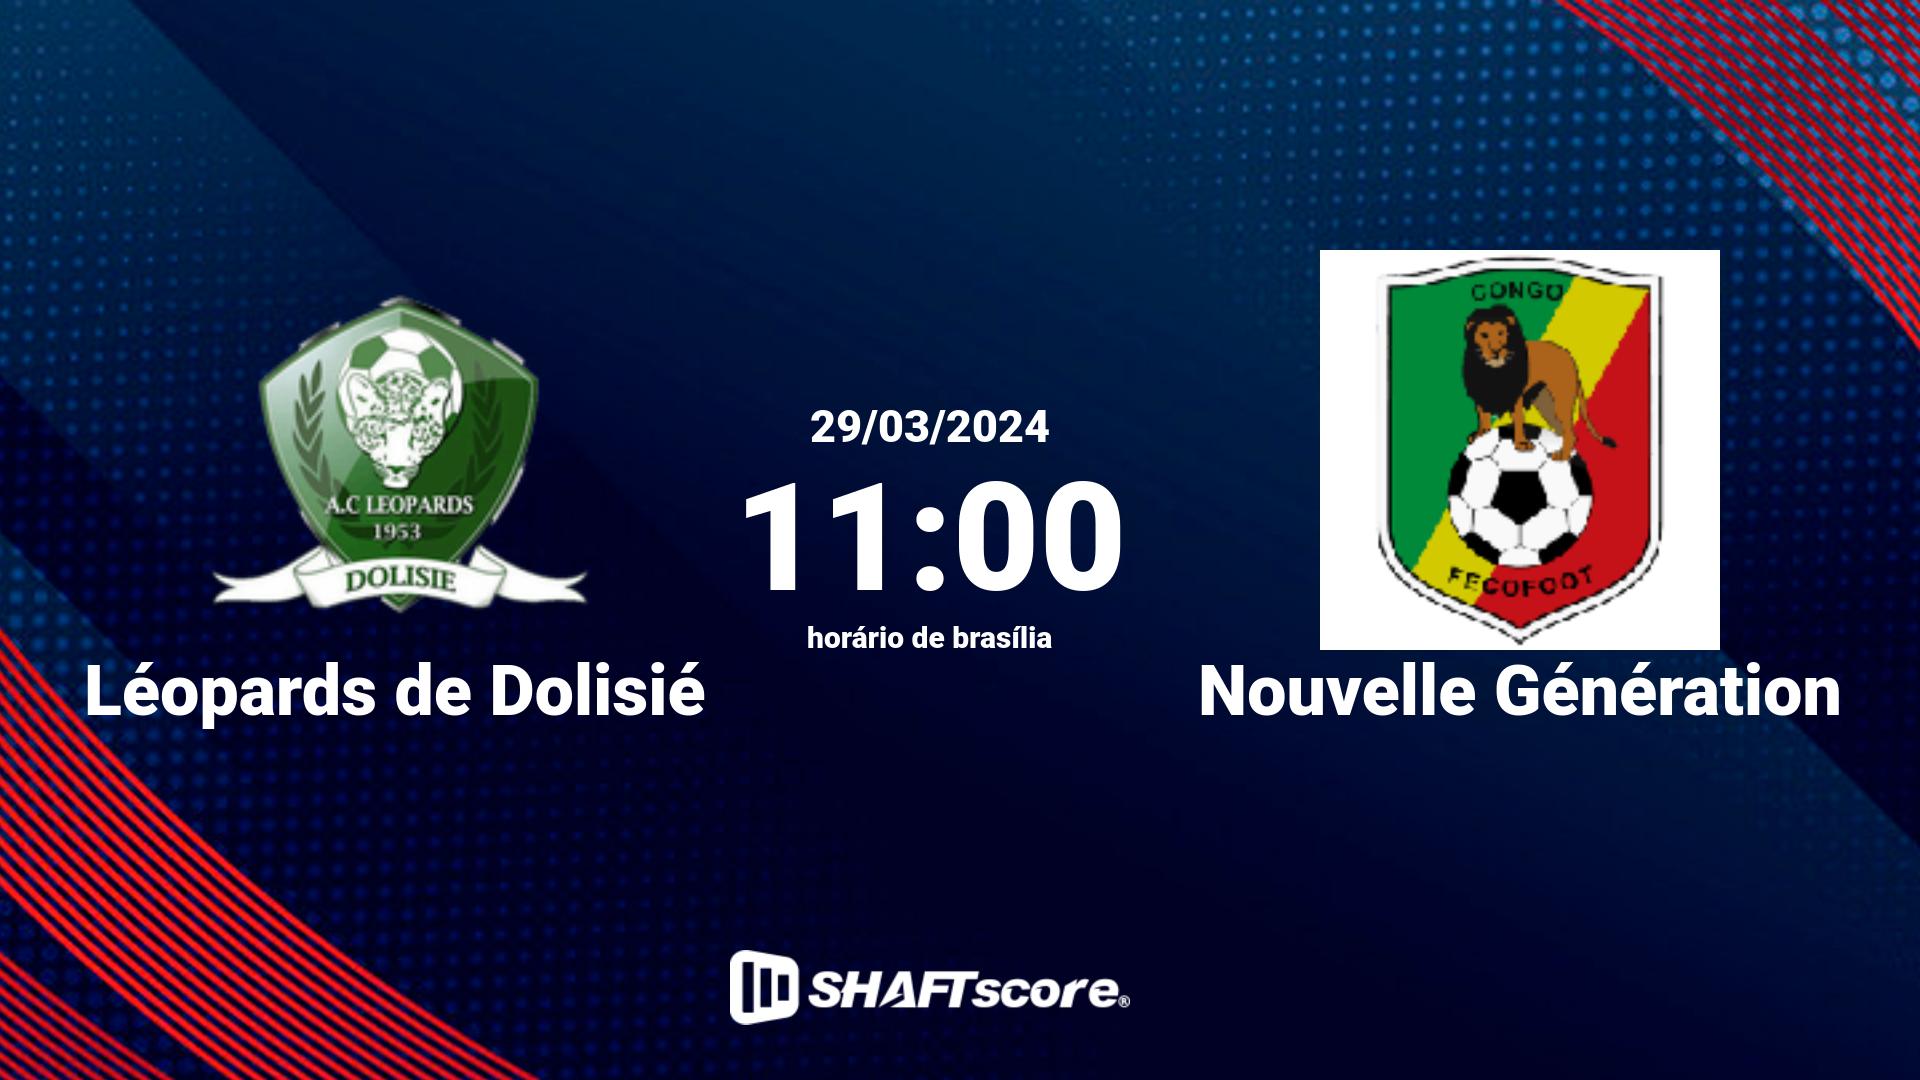 Estatísticas do jogo Léopards de Dolisié vs Nouvelle Génération 29.03 11:00